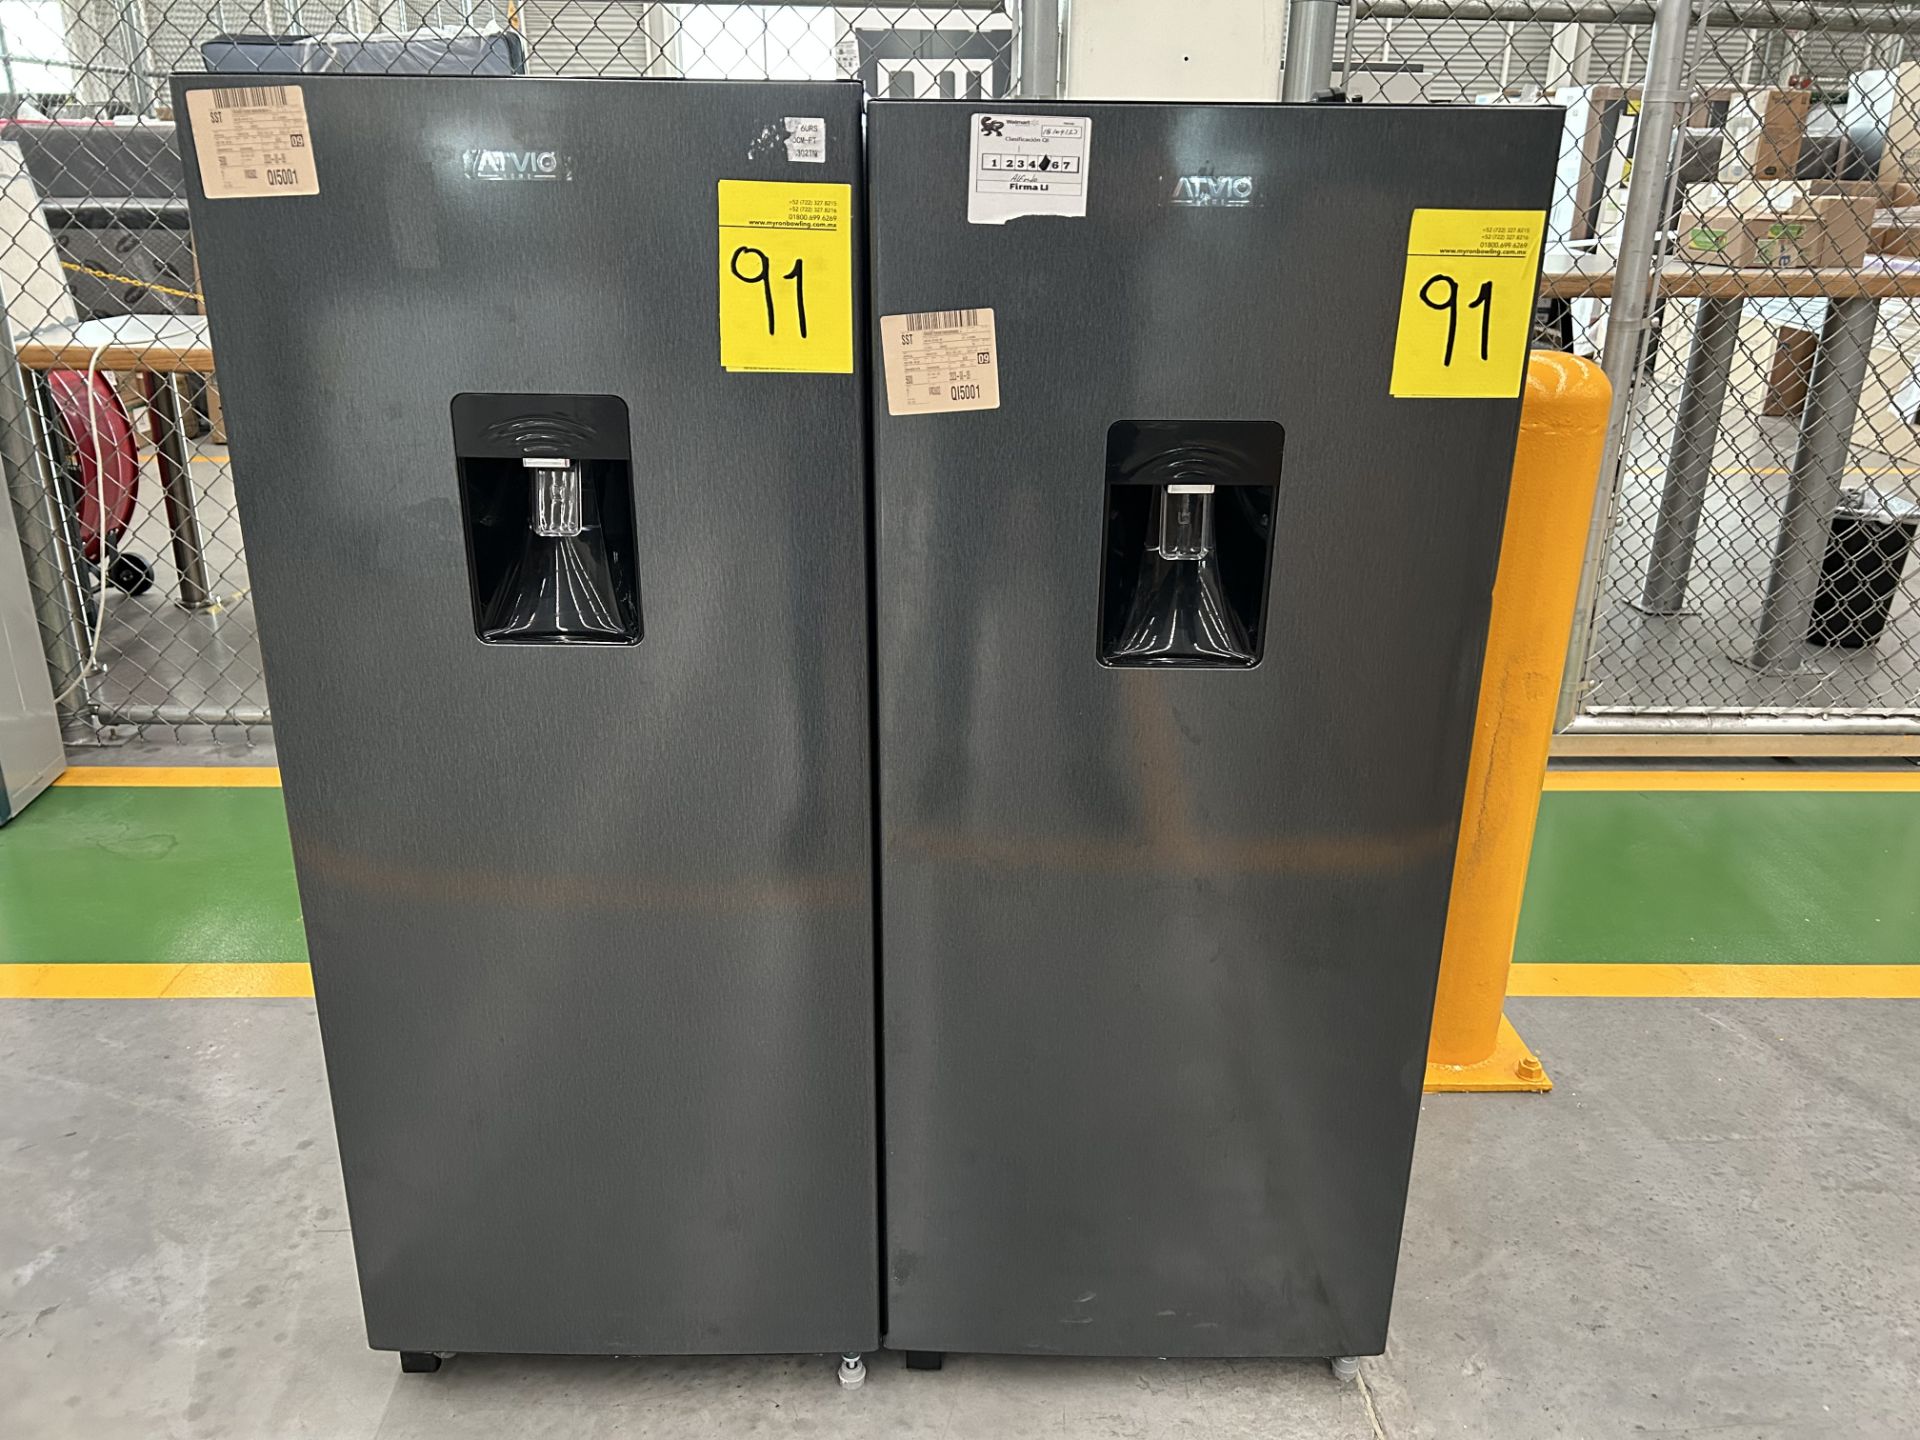 Lote de 2 refrigeradores contiene: 1 refrigerador con dispensador de agua Marca ATVIO, Modelo AT66U